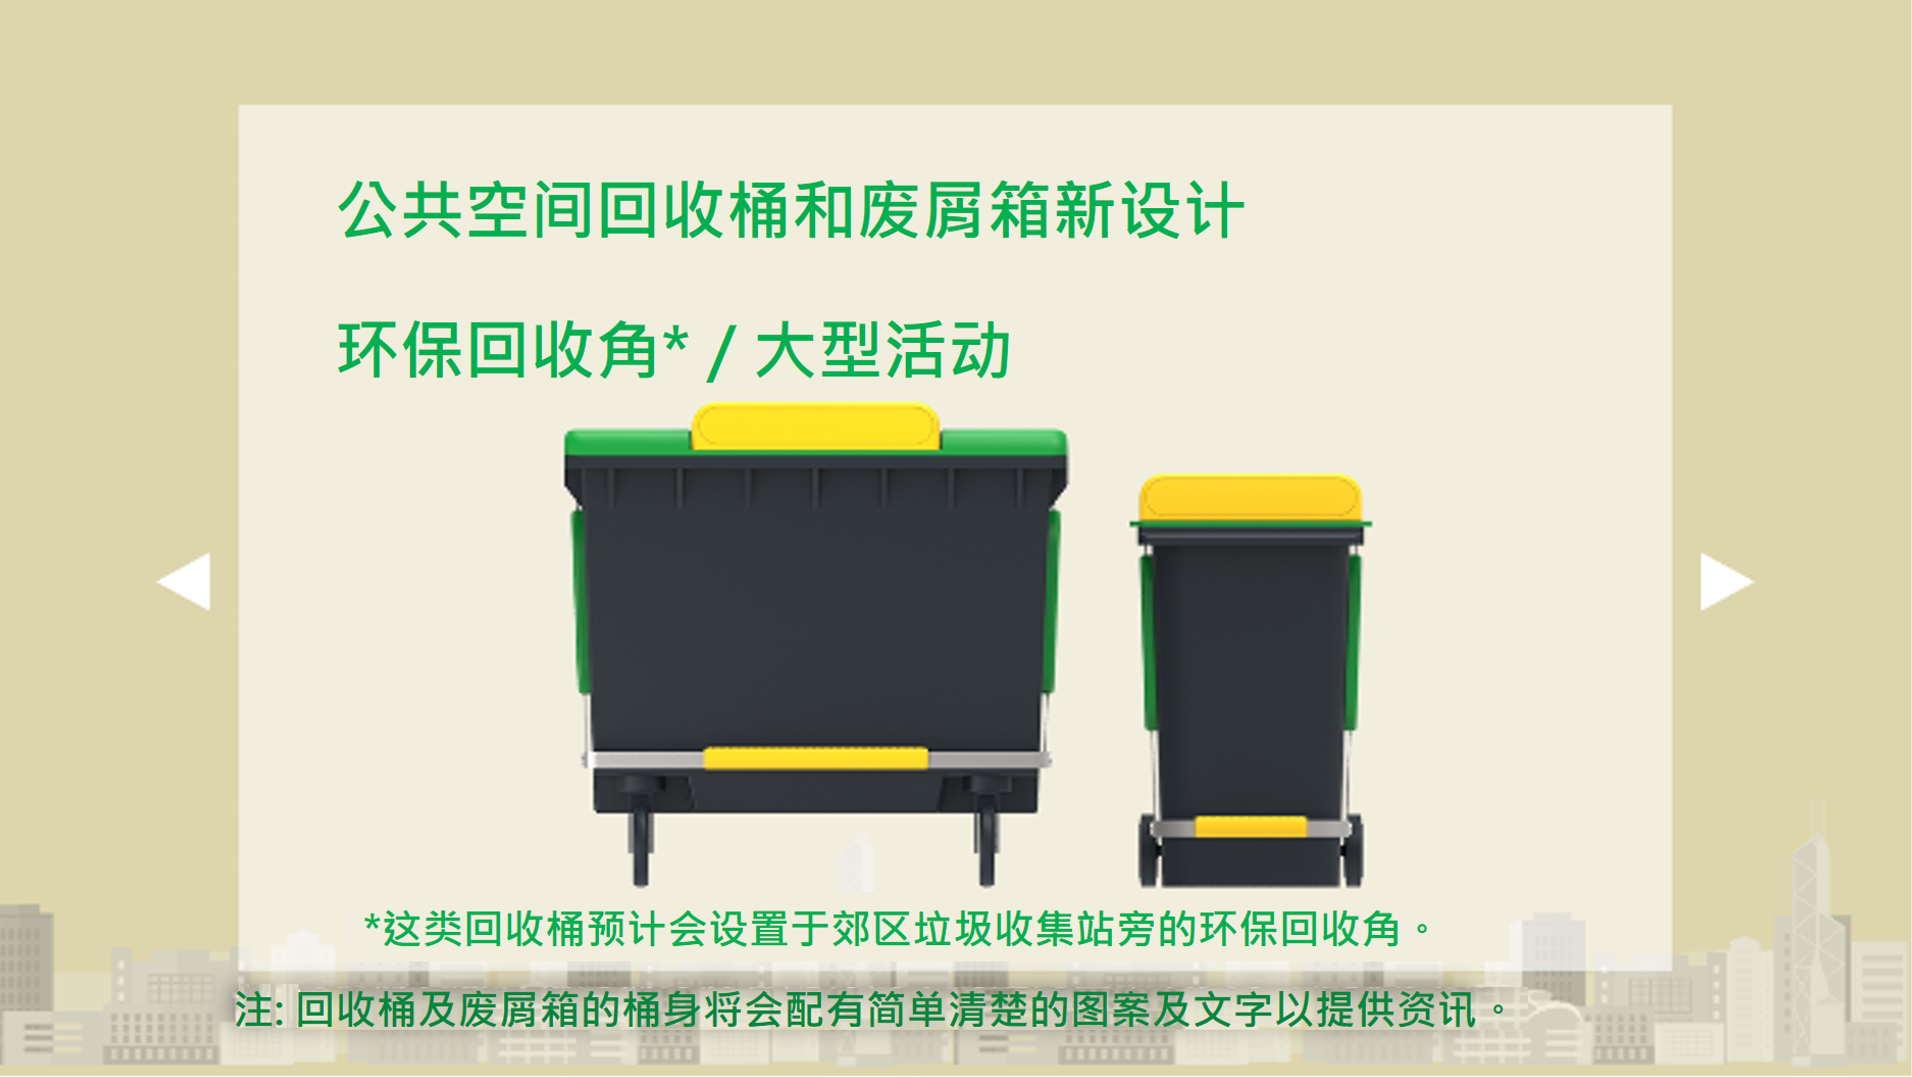 公共空间回收桶和废屑箱新设计 - 环保回收角/大型活动